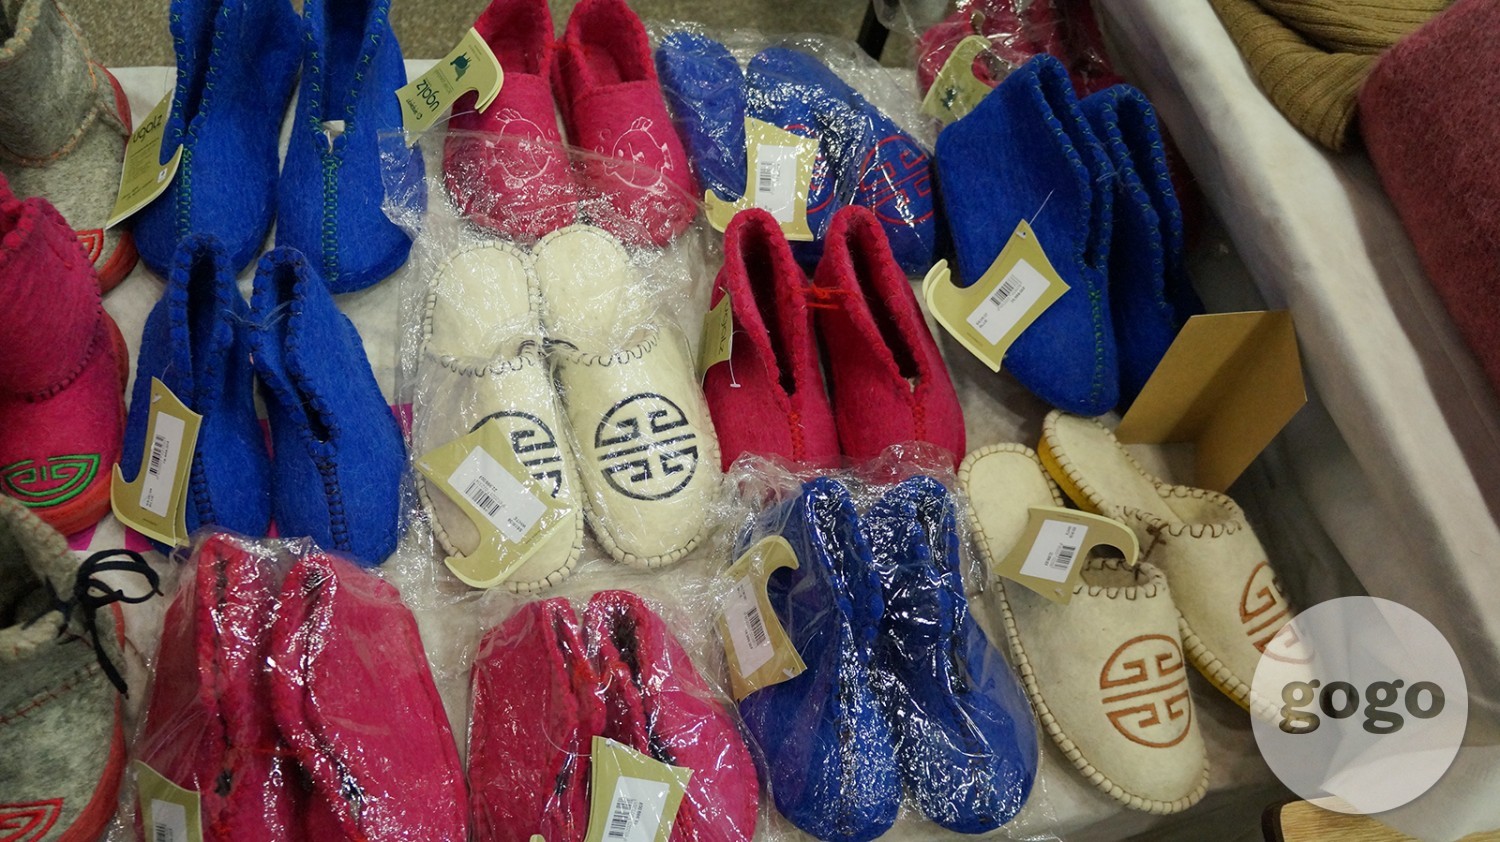 Felt slippers (MNT 18.000-26.000)